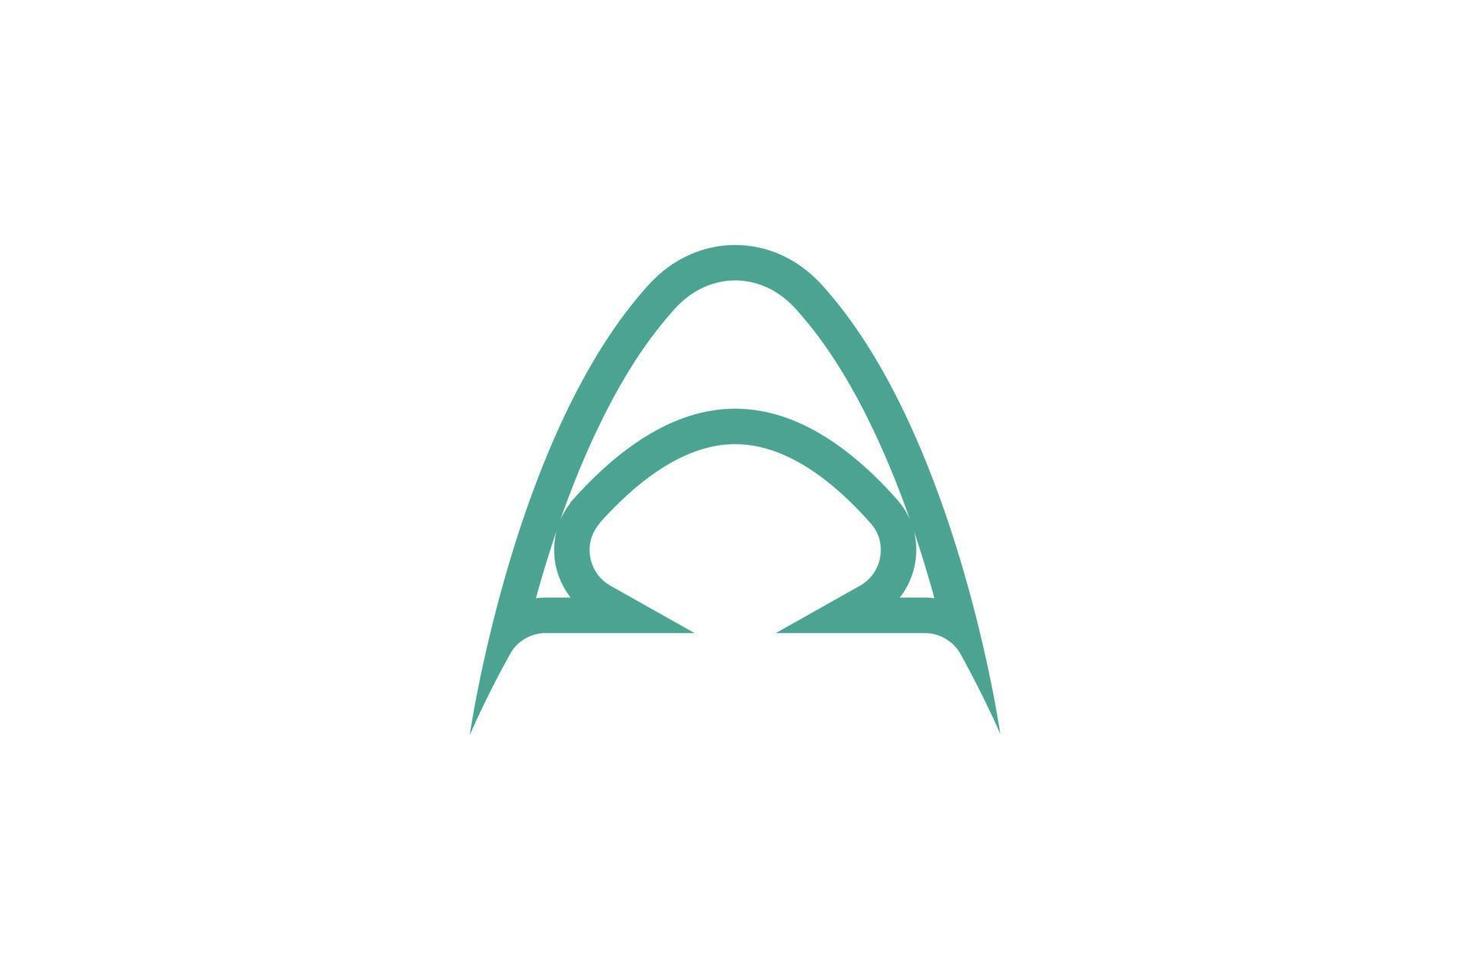 Alphabetical Letter A Logo vector